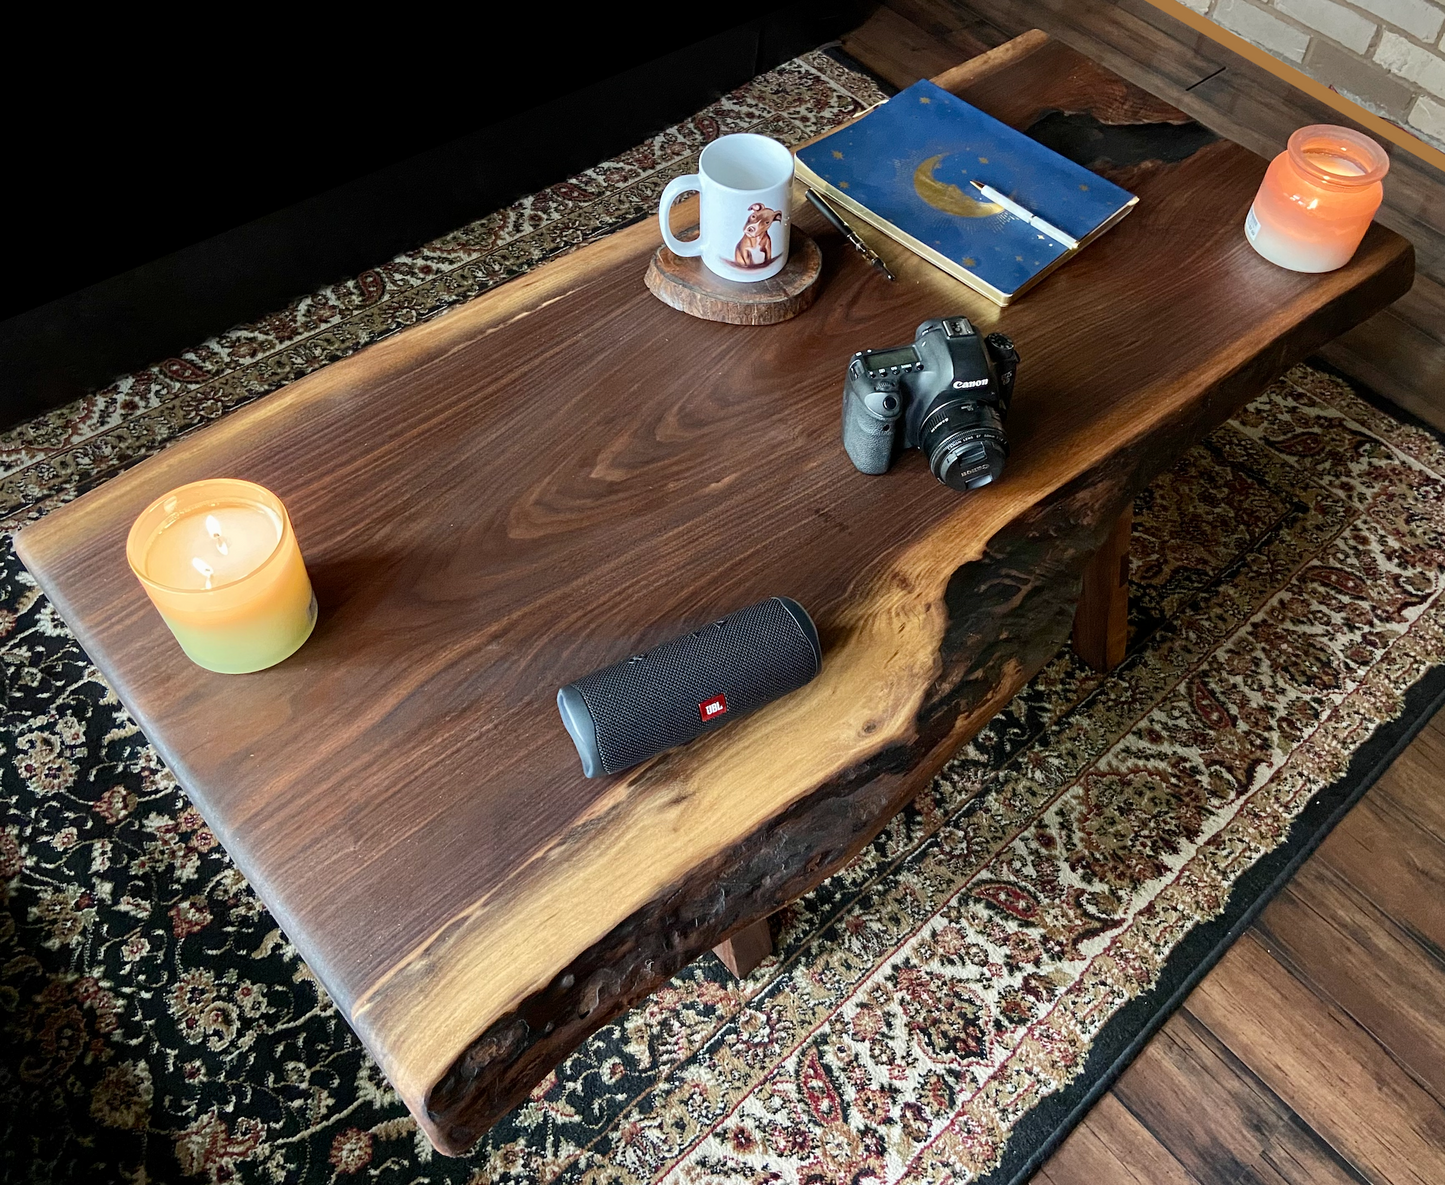  Live Edge Walnut Epoxy Coffee Table w/Clear Epoxy Fill|Rustic Live Edge Wood Table|Black Walnut Live Edge Wood Table Top|Live Edge Walnut